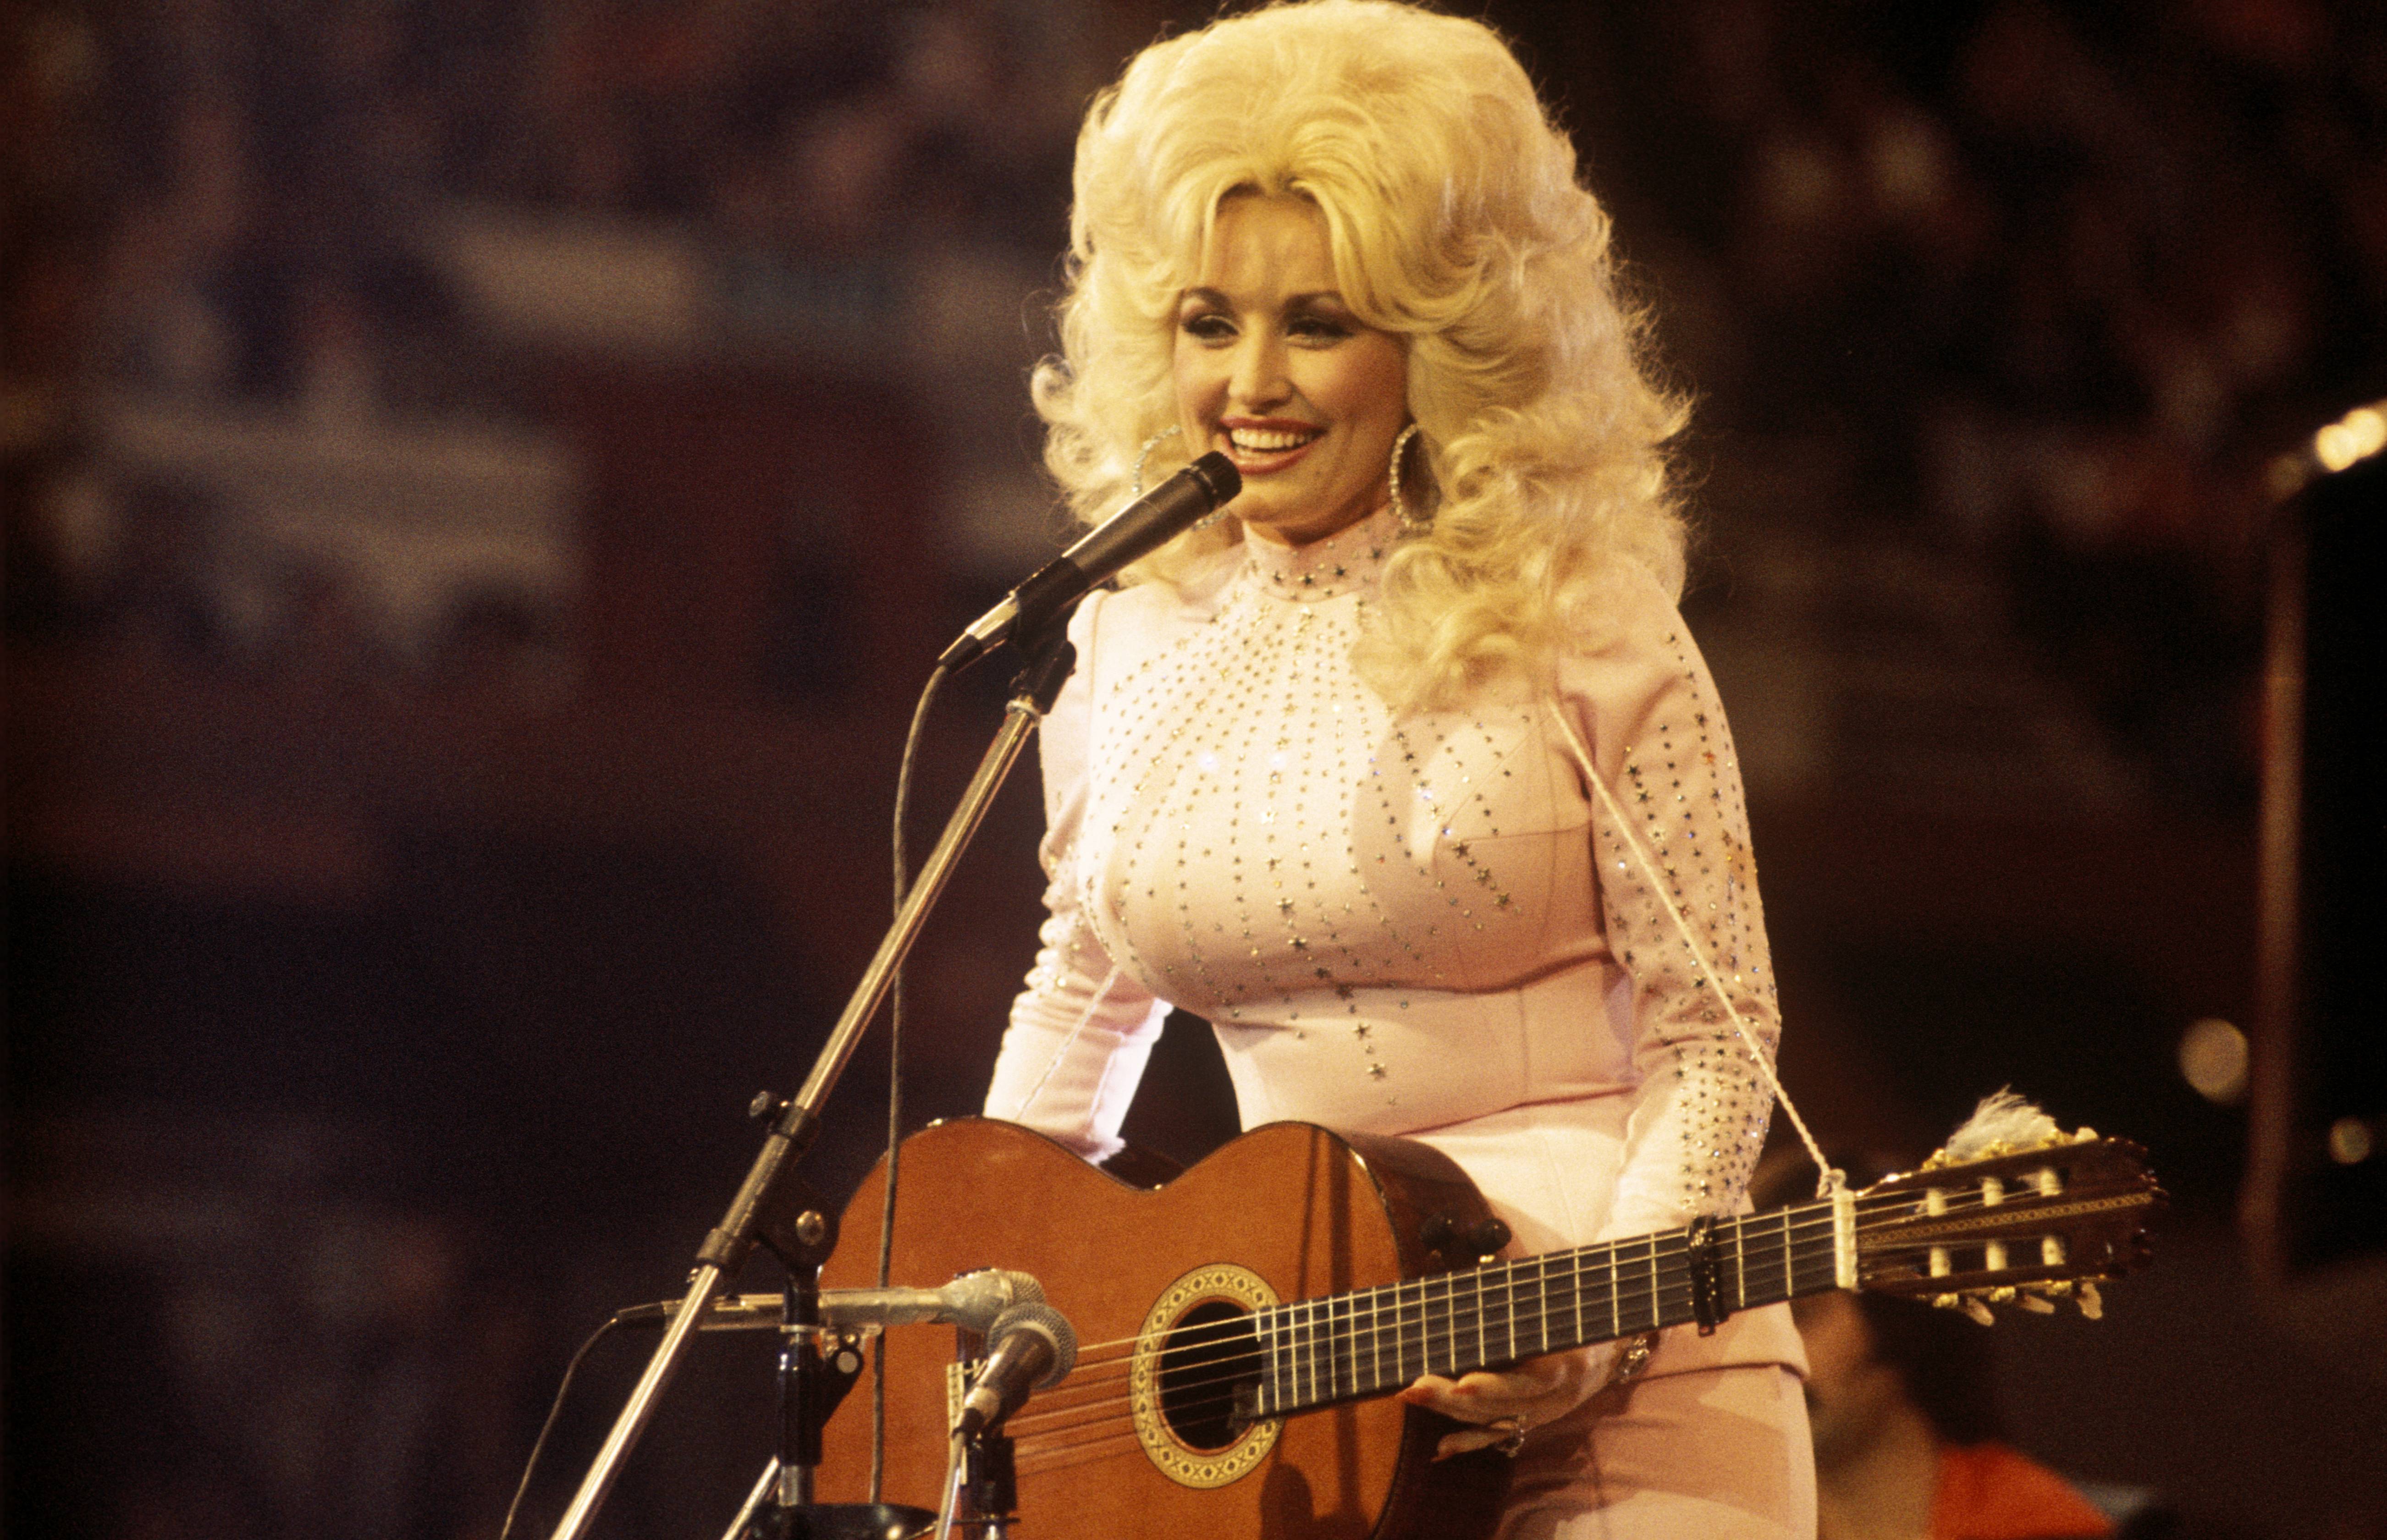 Dolly Parton, 'Geçersiz' Büyükannesine Diğer Torunların Hiçbiri Yapmayacakken Yardım Etti - O da Ona Şaka Yapardı